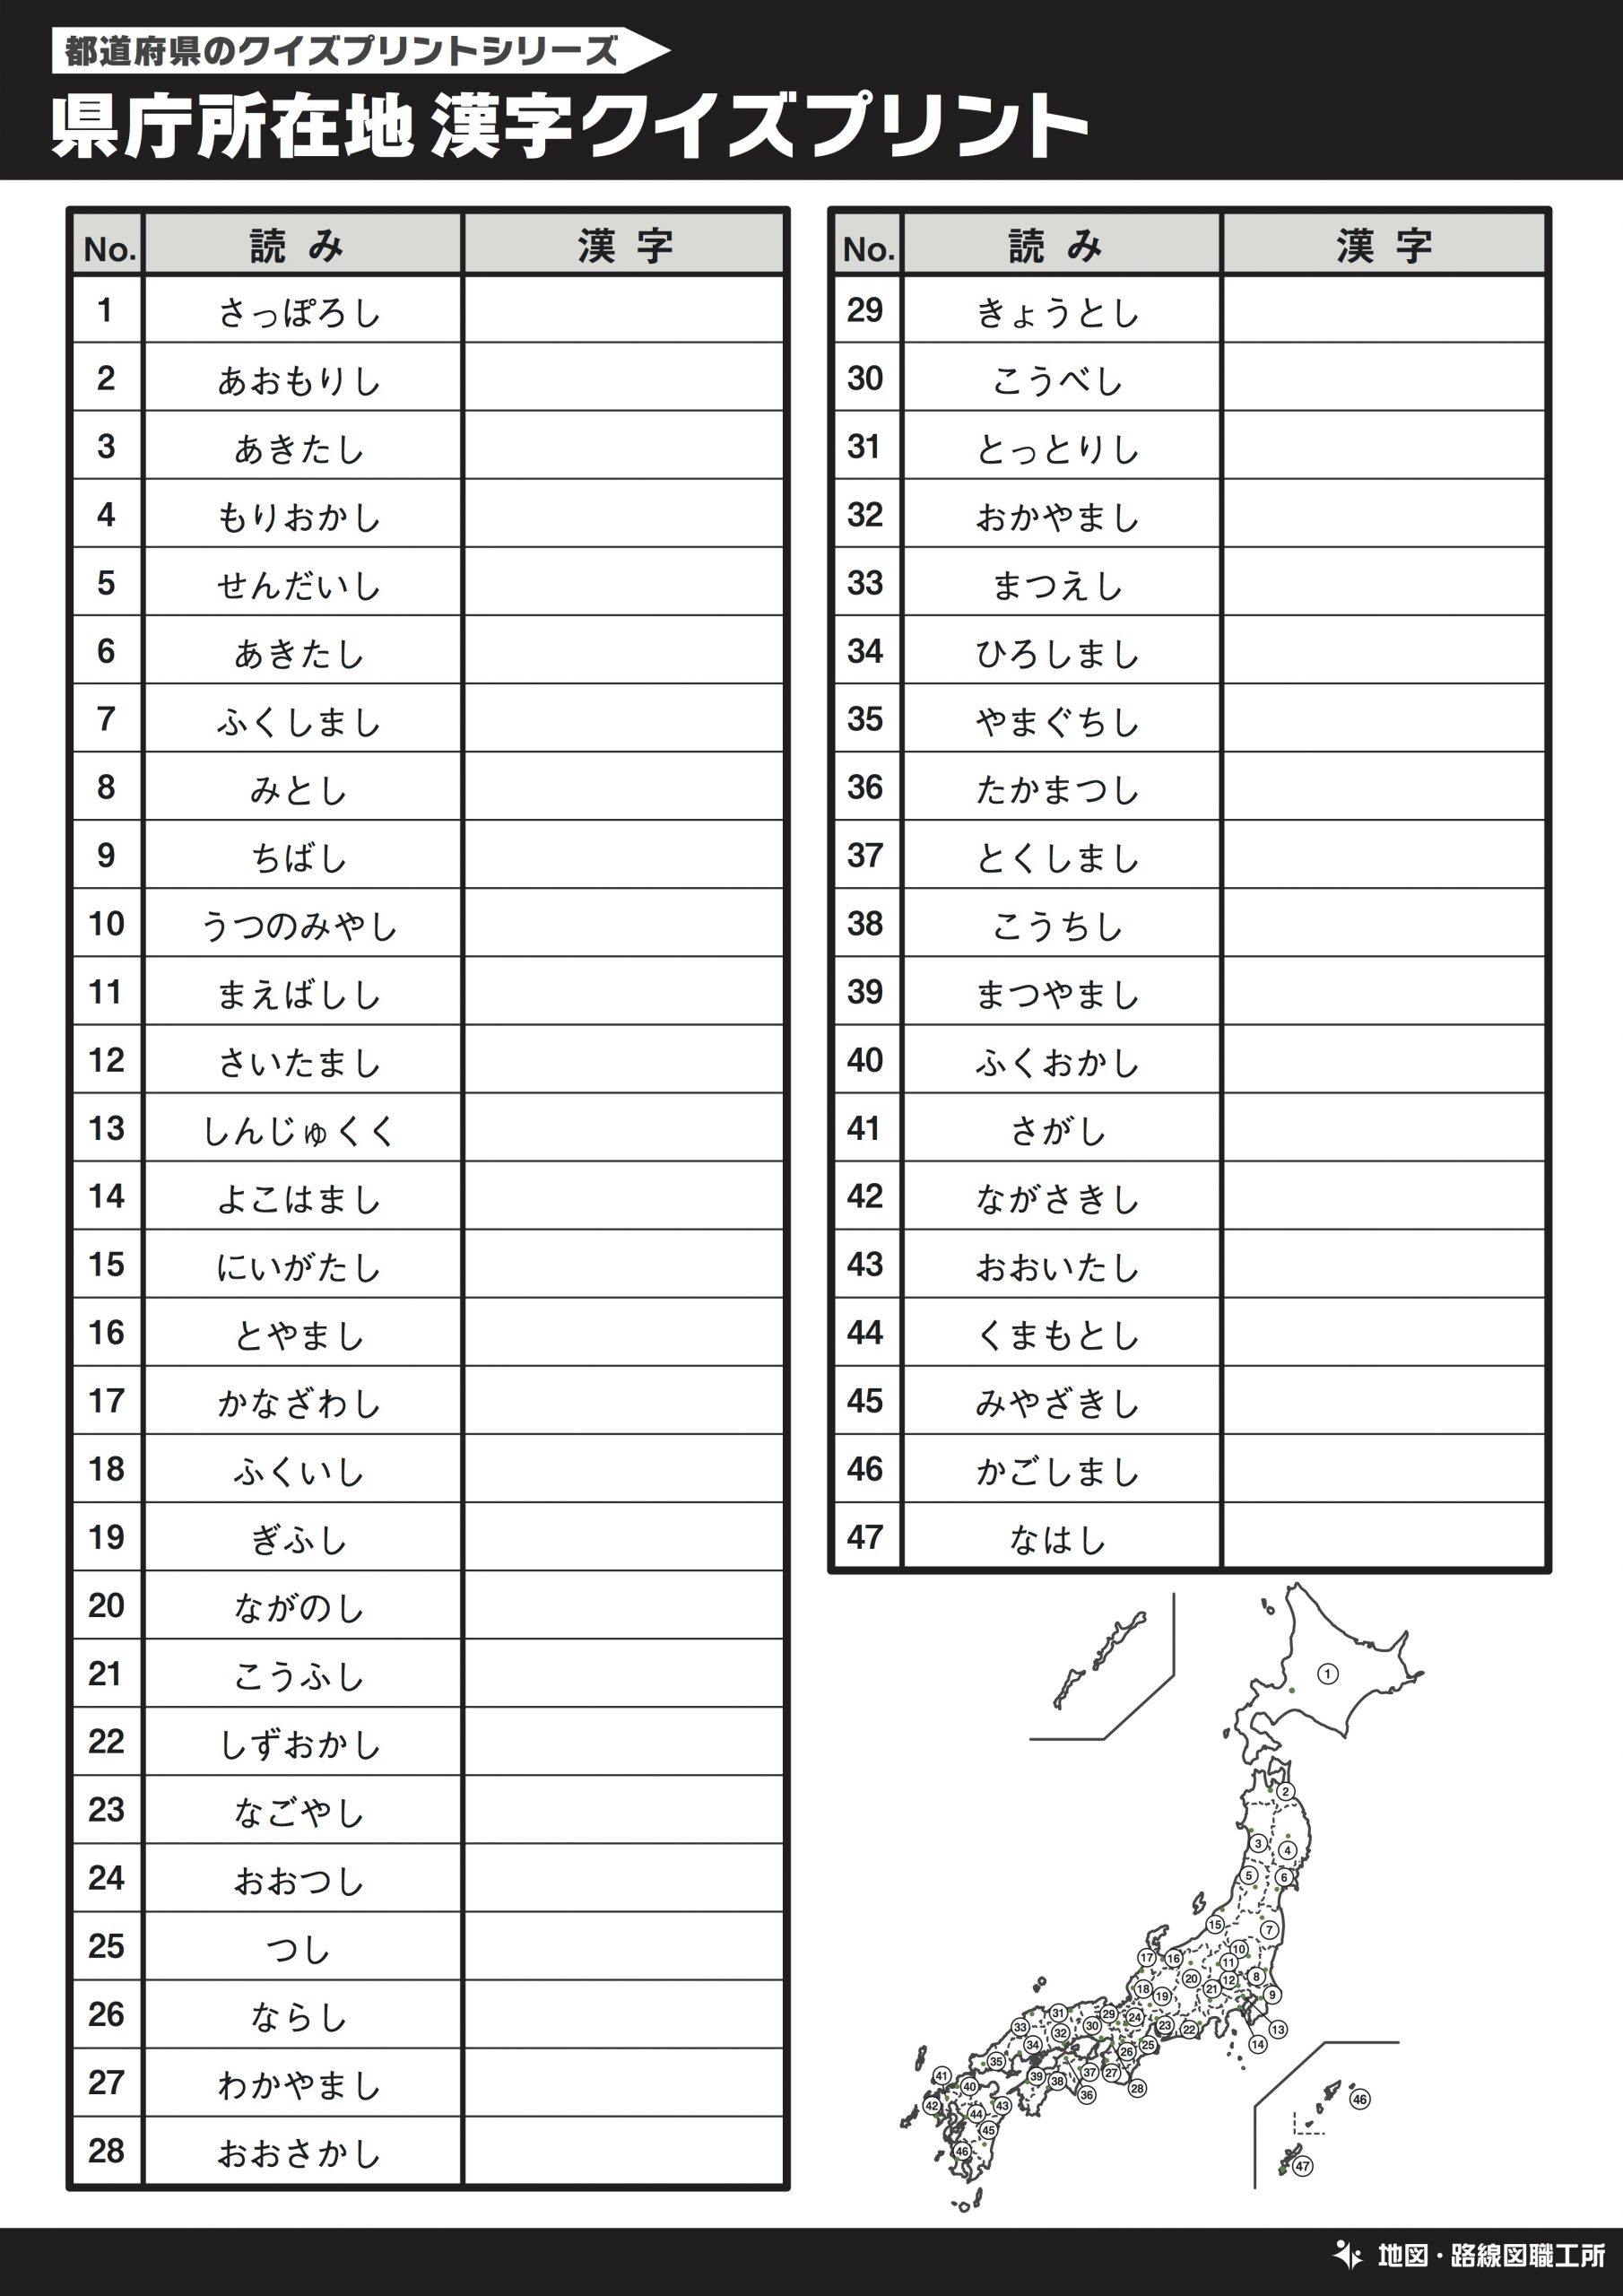 日本地図の学習用クイズプリント 30種類以上